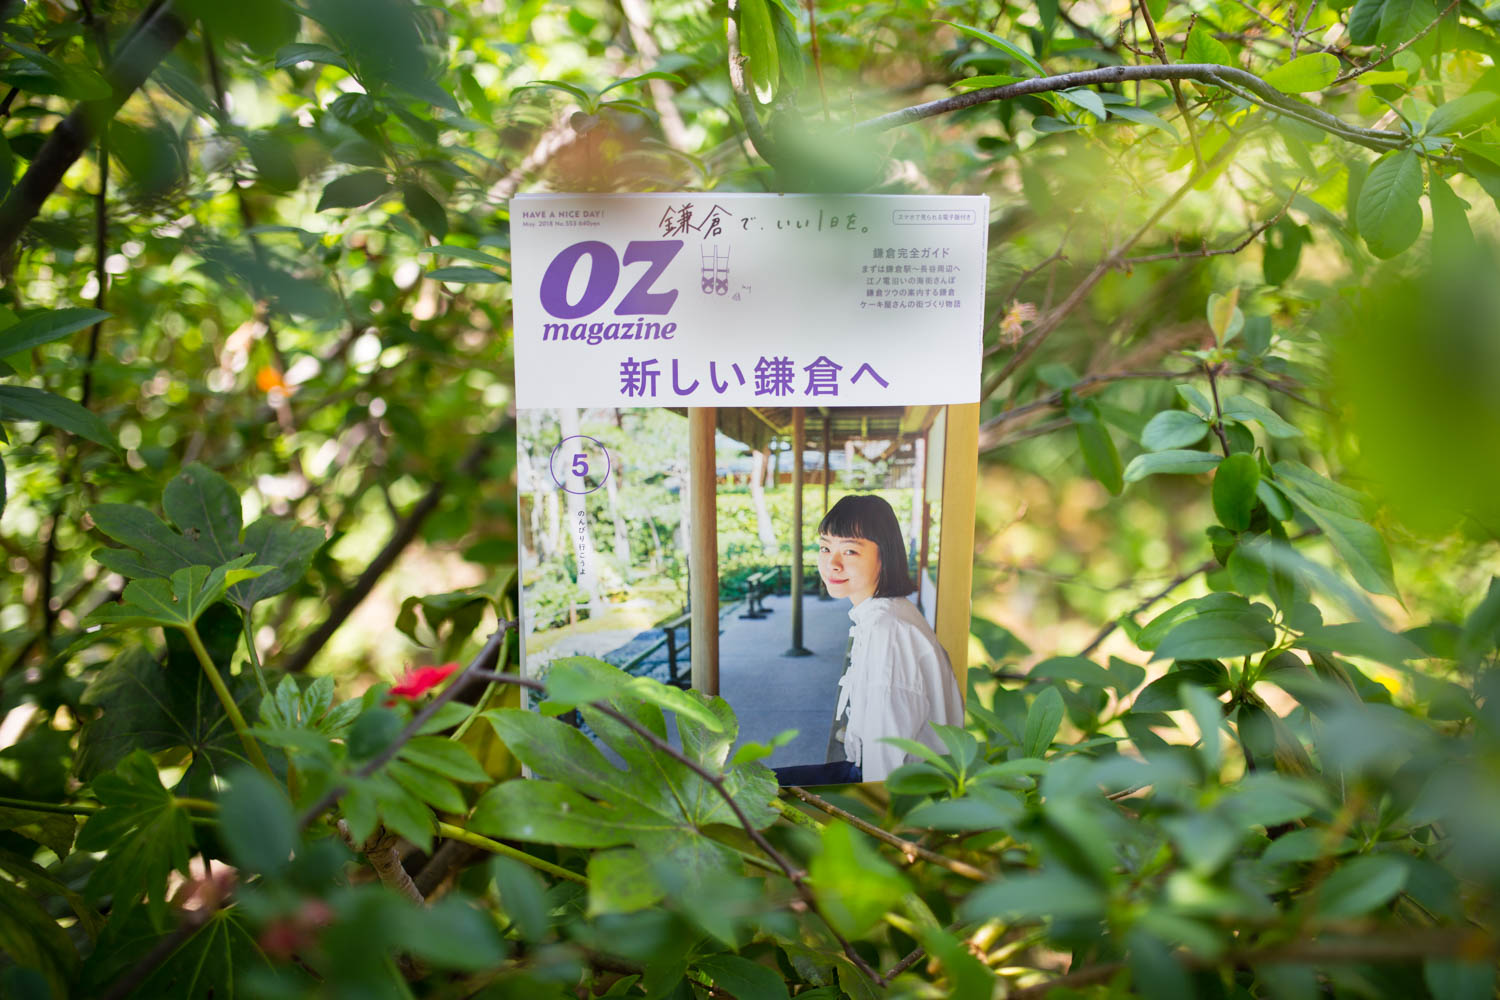 『オズマガジン』で鎌倉のオススメを紹介